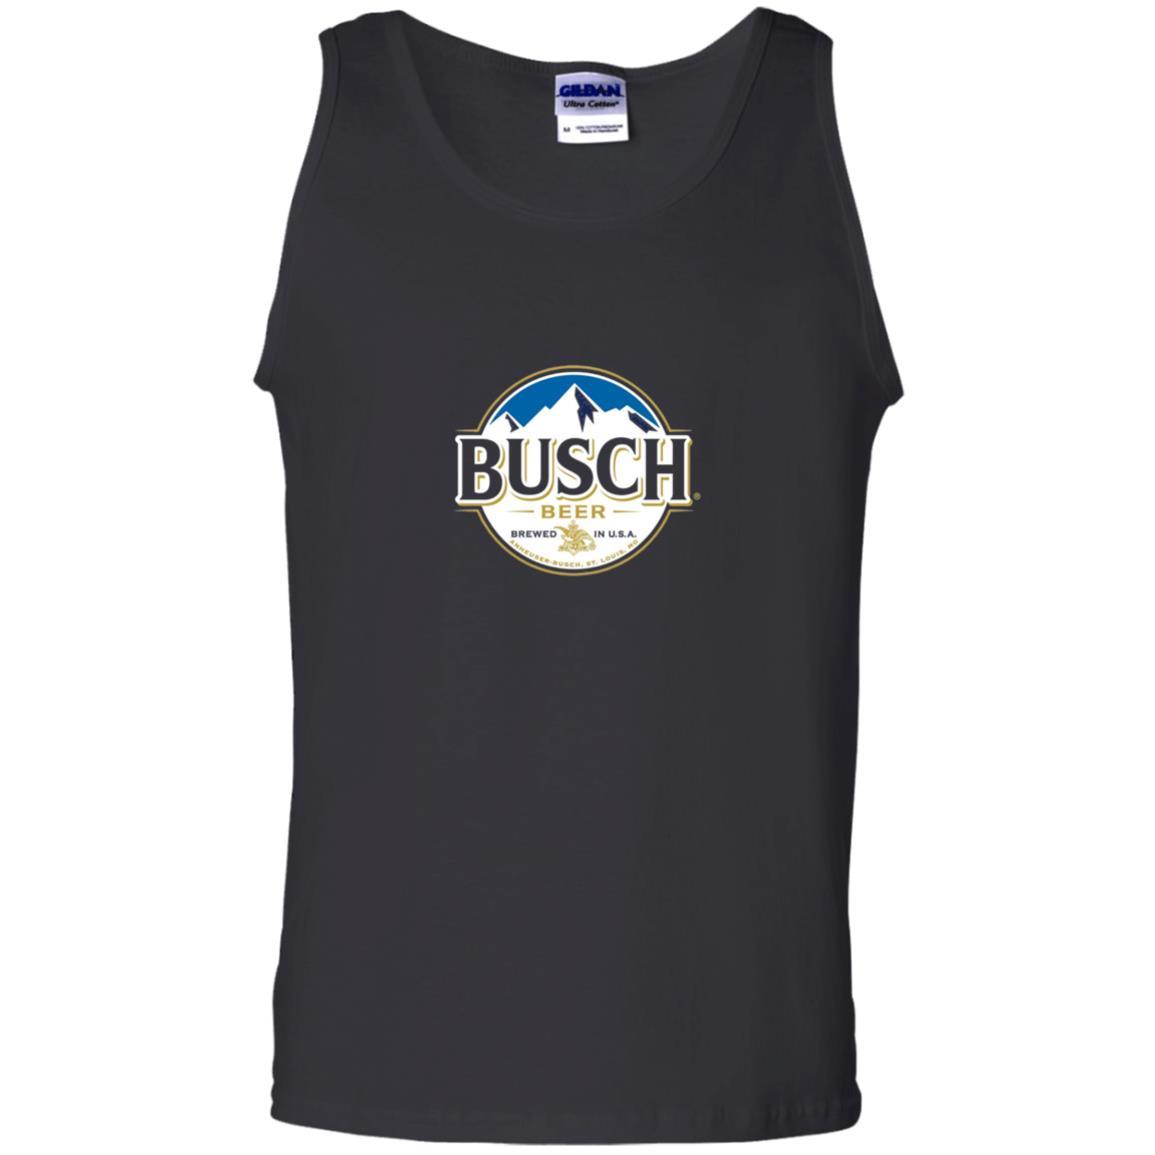 Beer Lovers T-shirt Busch Beer